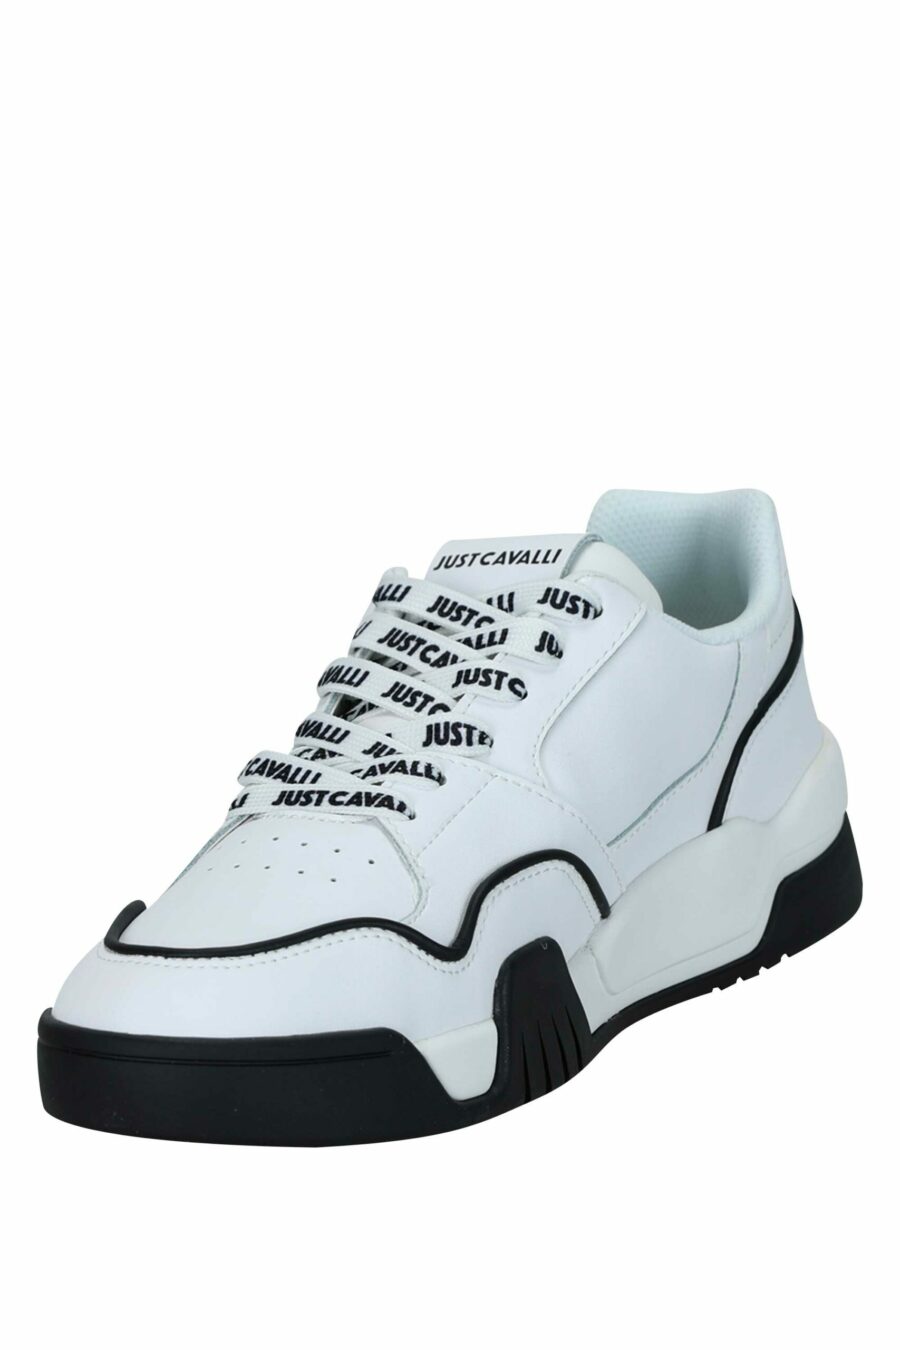 Zapatillas blancas con detalles negros y logo monocromático - 8052672737144 3 scaled